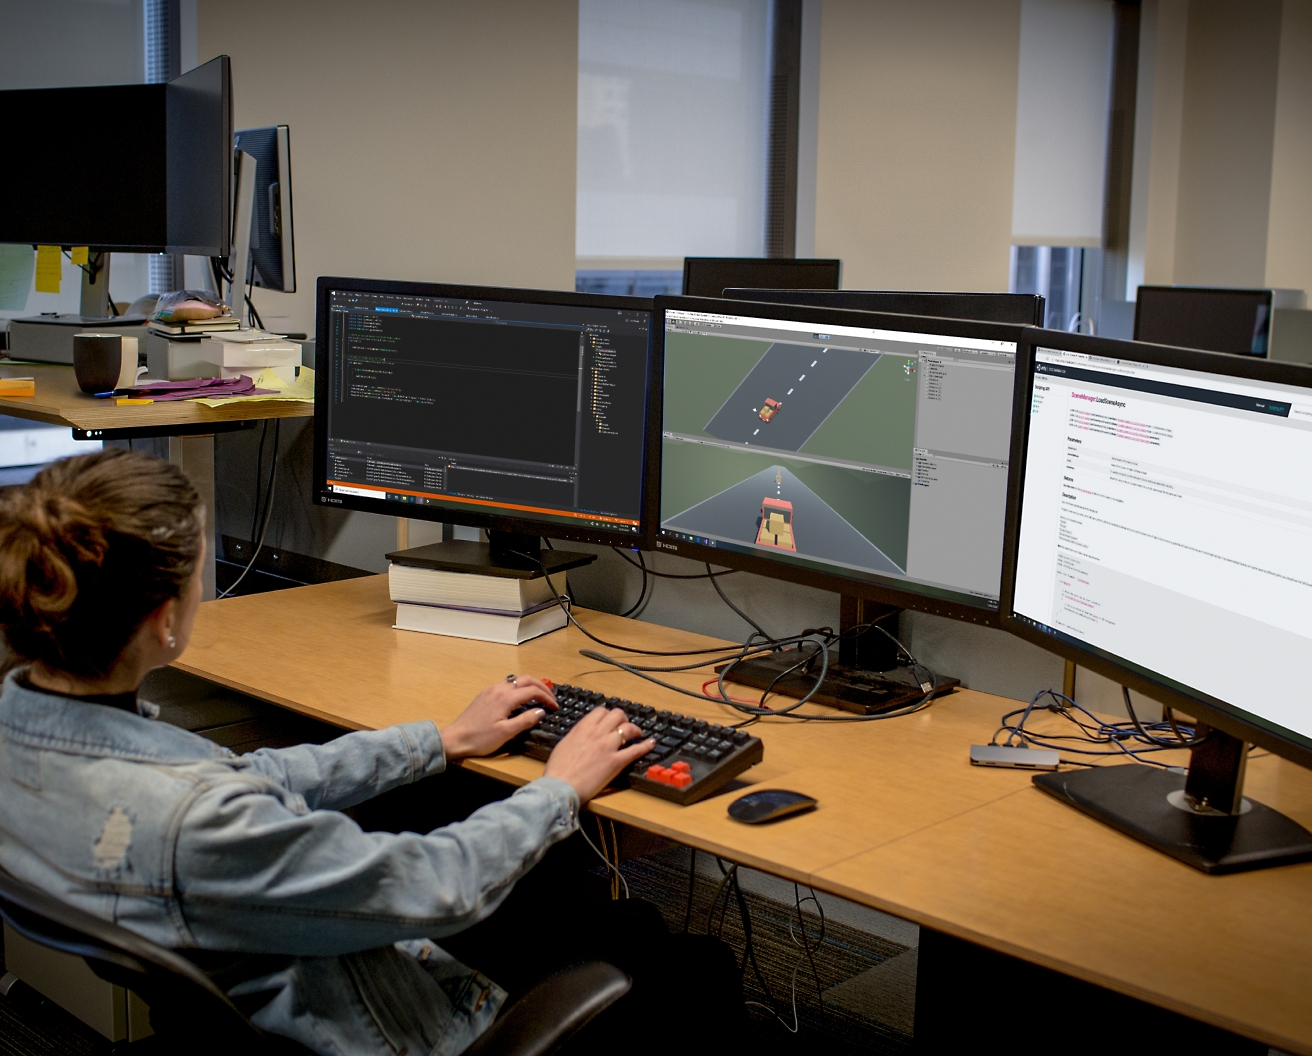 Egy szoftverfejlesztő nő dolgozik egy irodában több monitoron, és szoftvereket kódol és hibakeresést végez.